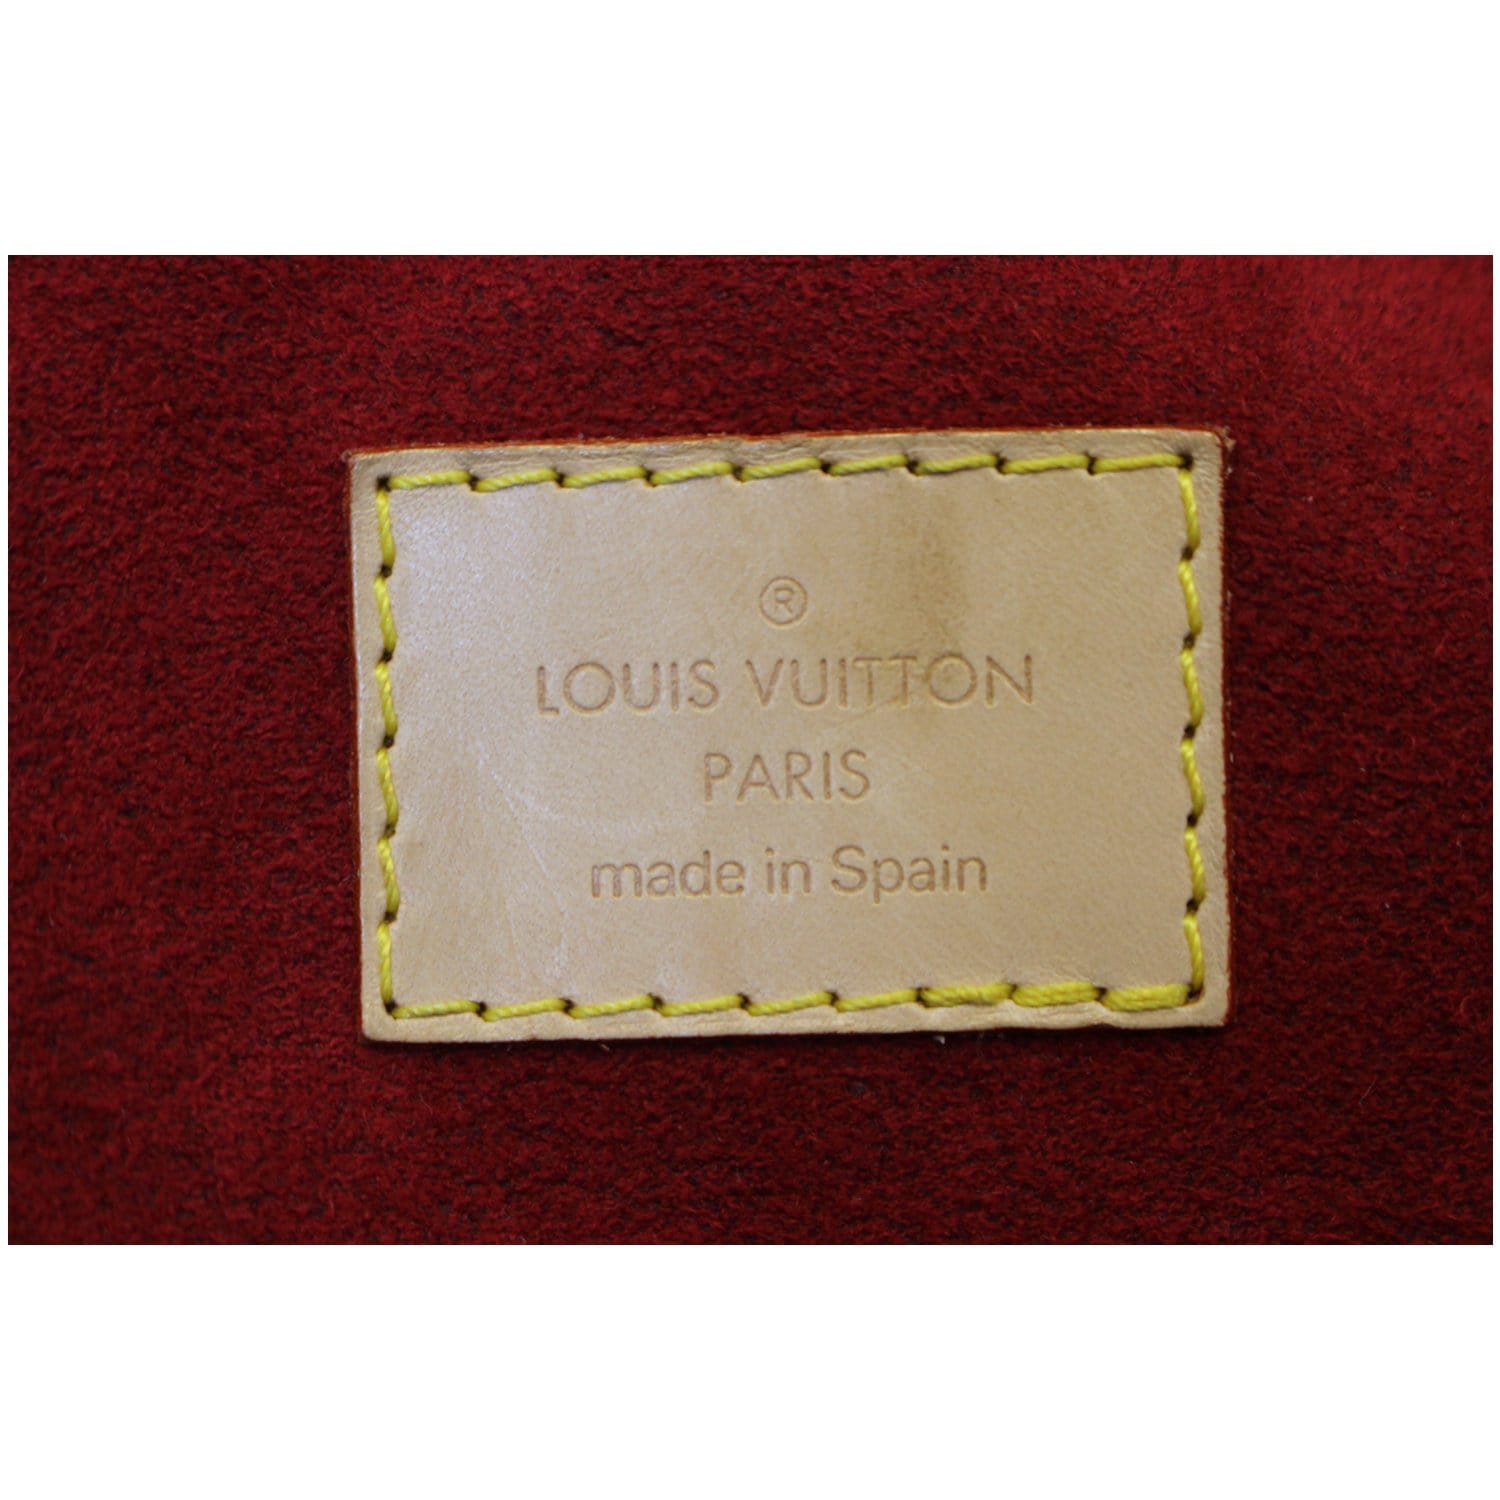 LOUIS VUITTON Monogram Canvas Mizi Handbag - Final Call